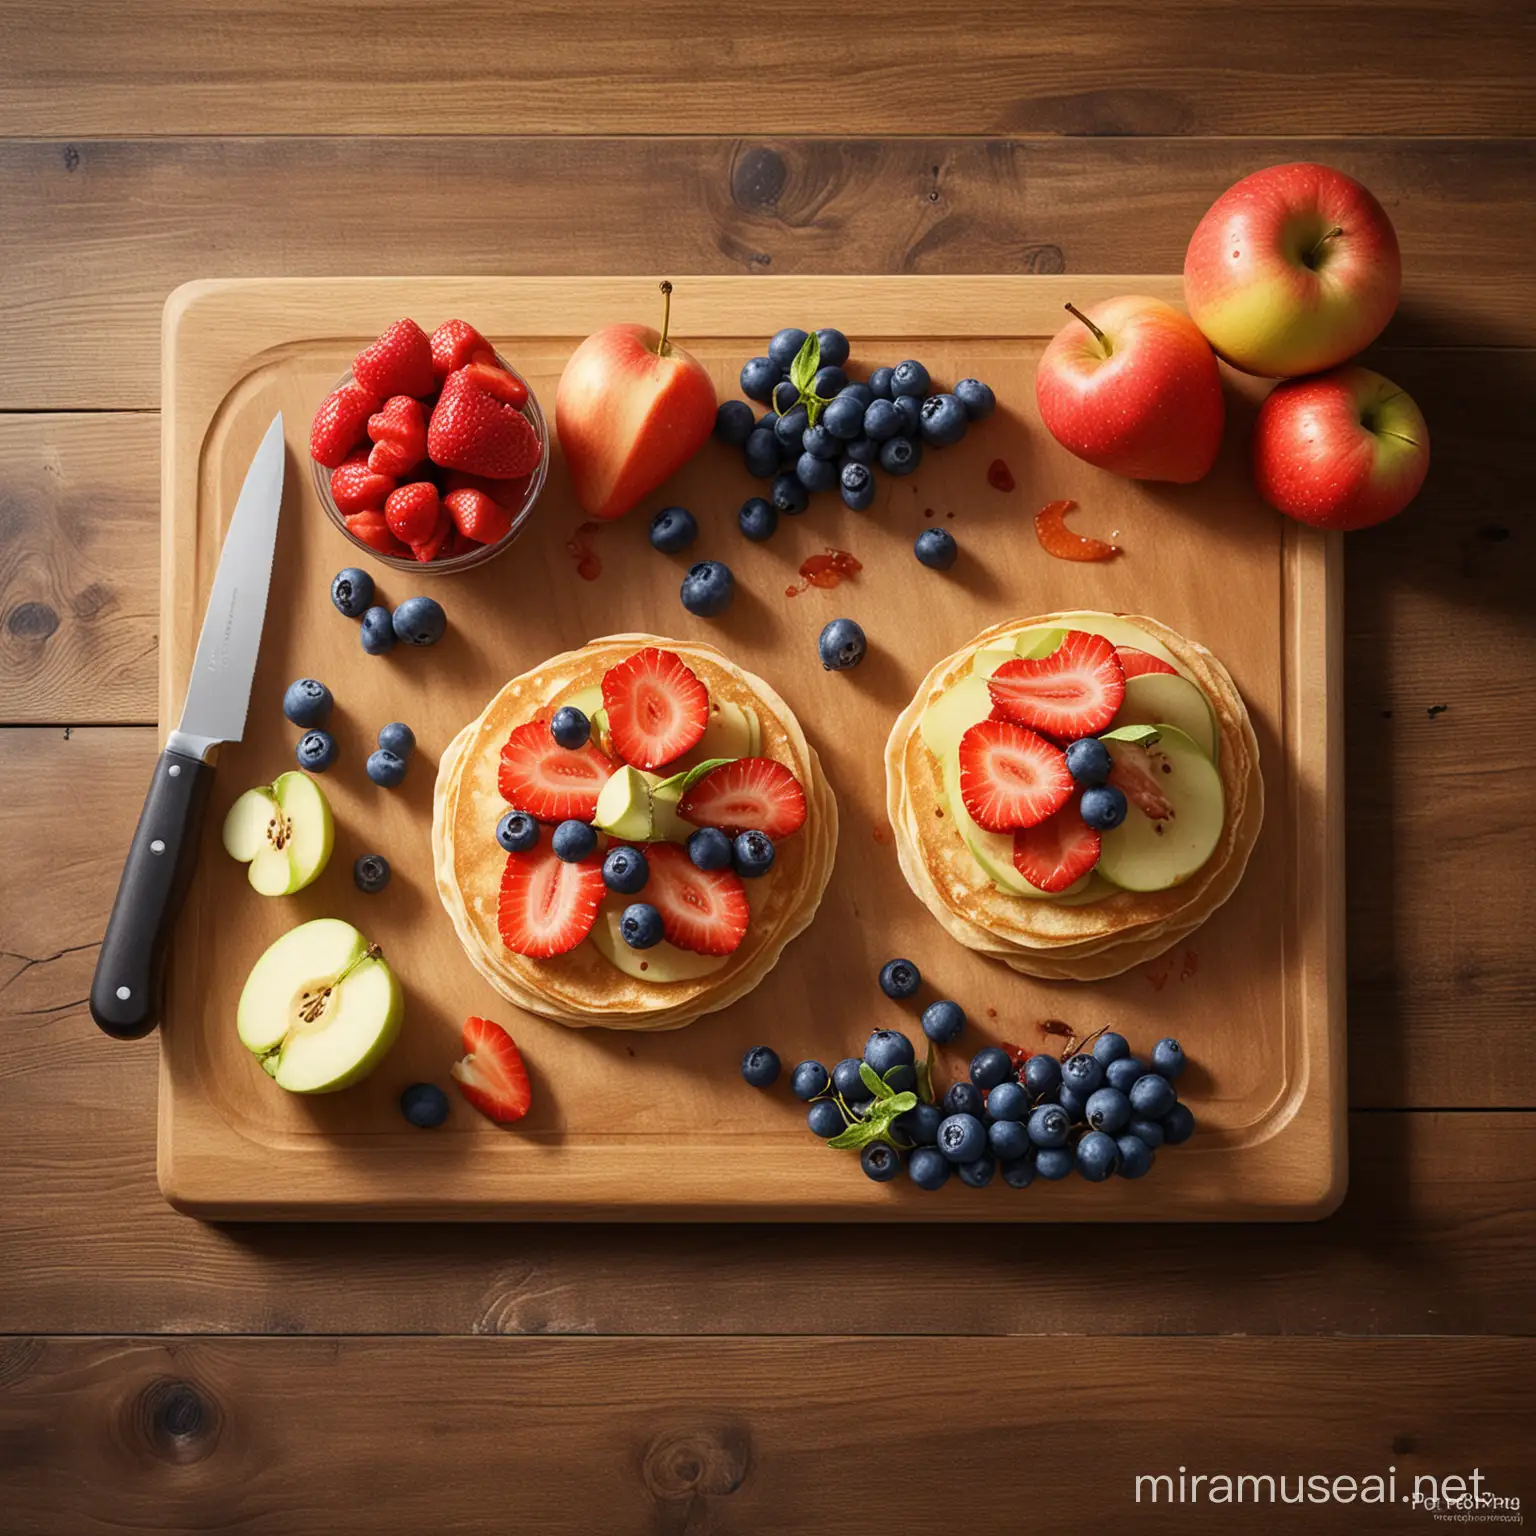 User
/imagine prompt: Przygotowanie owoców do placuszków bogatych w żelazo, pokazujące truskawki, borówki i plasterki jabłka. Owoce są krojone na mniejsze kawałki na drewnianej desce do krojenia, obok nich leży nóż kuchenny. Scena uchwytuje świeże, żywe kolory owoców. na fotografii niech będą 3 placki. przepis ten skierowany jest dla dzieci. Created Using: fotografia wysokiej rozdzielczości, żywe kolory, naturalne otoczenie kuchenne, szczegółowe zbliżenie, realistyczna tekstura i oświetlenie owoców --ar 1:1
